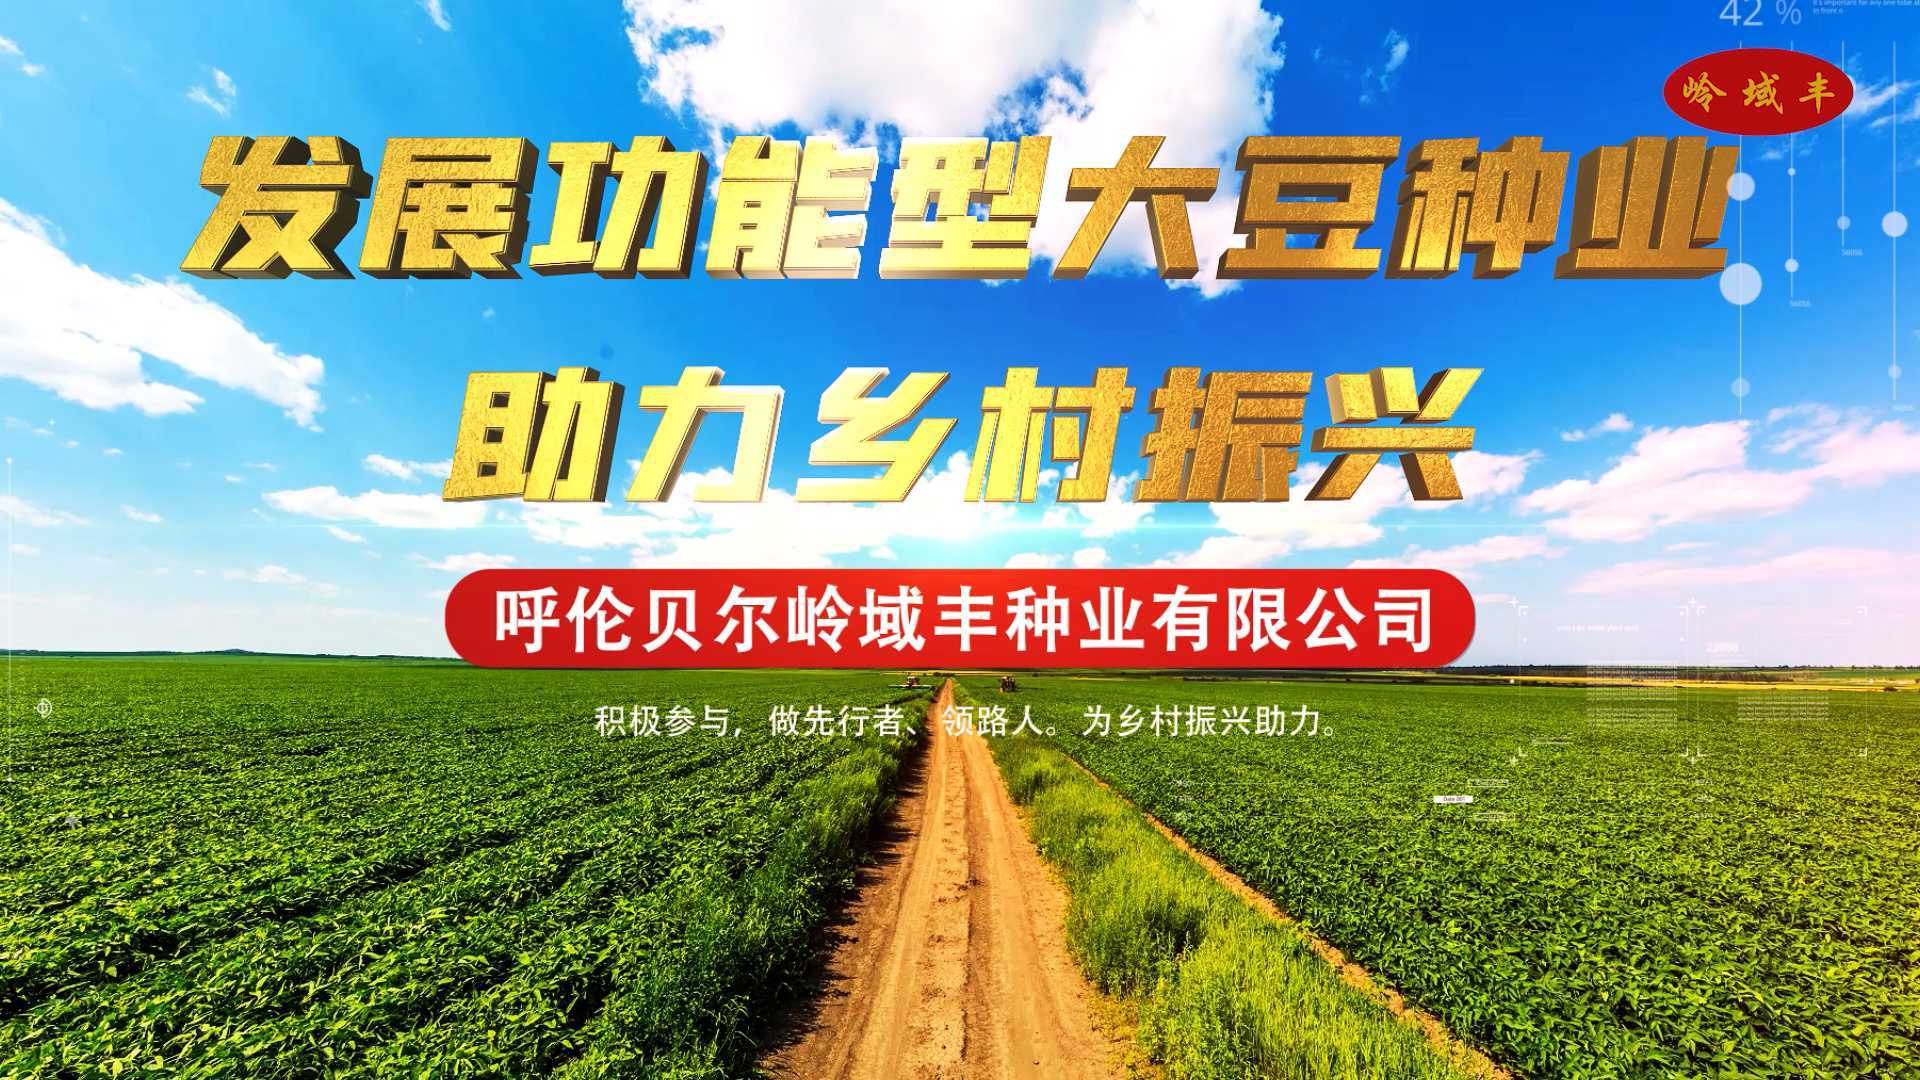 发展功能型大豆种业 助力乡村振兴 呼伦贝尔岭域丰